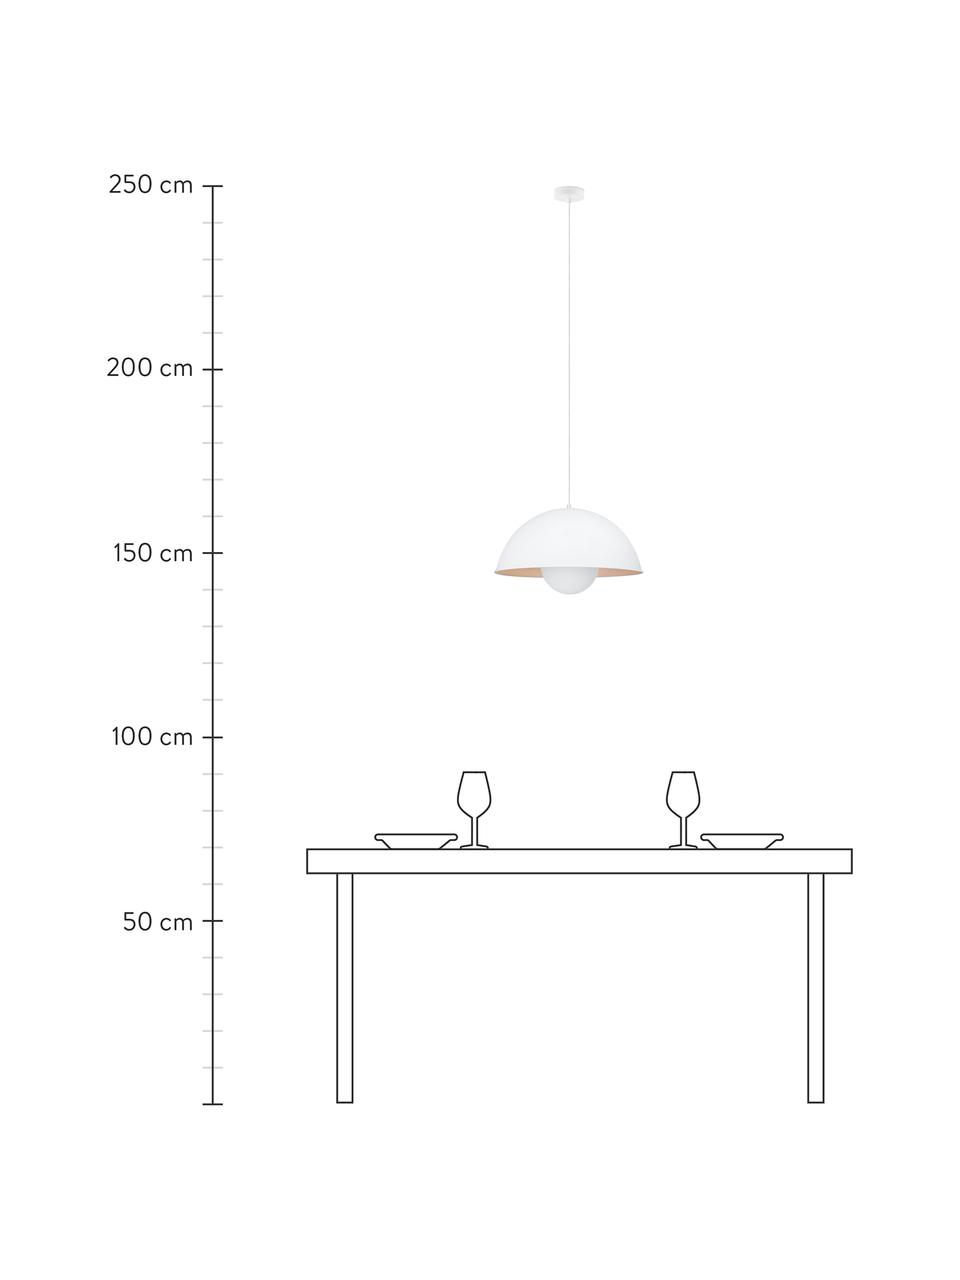 Hanglamp Fabriq in wit, Lampenkap: gecoat metaal, Baldakijn: gecoat metaal, Wit, beige, Ø 41 x H 29 cm